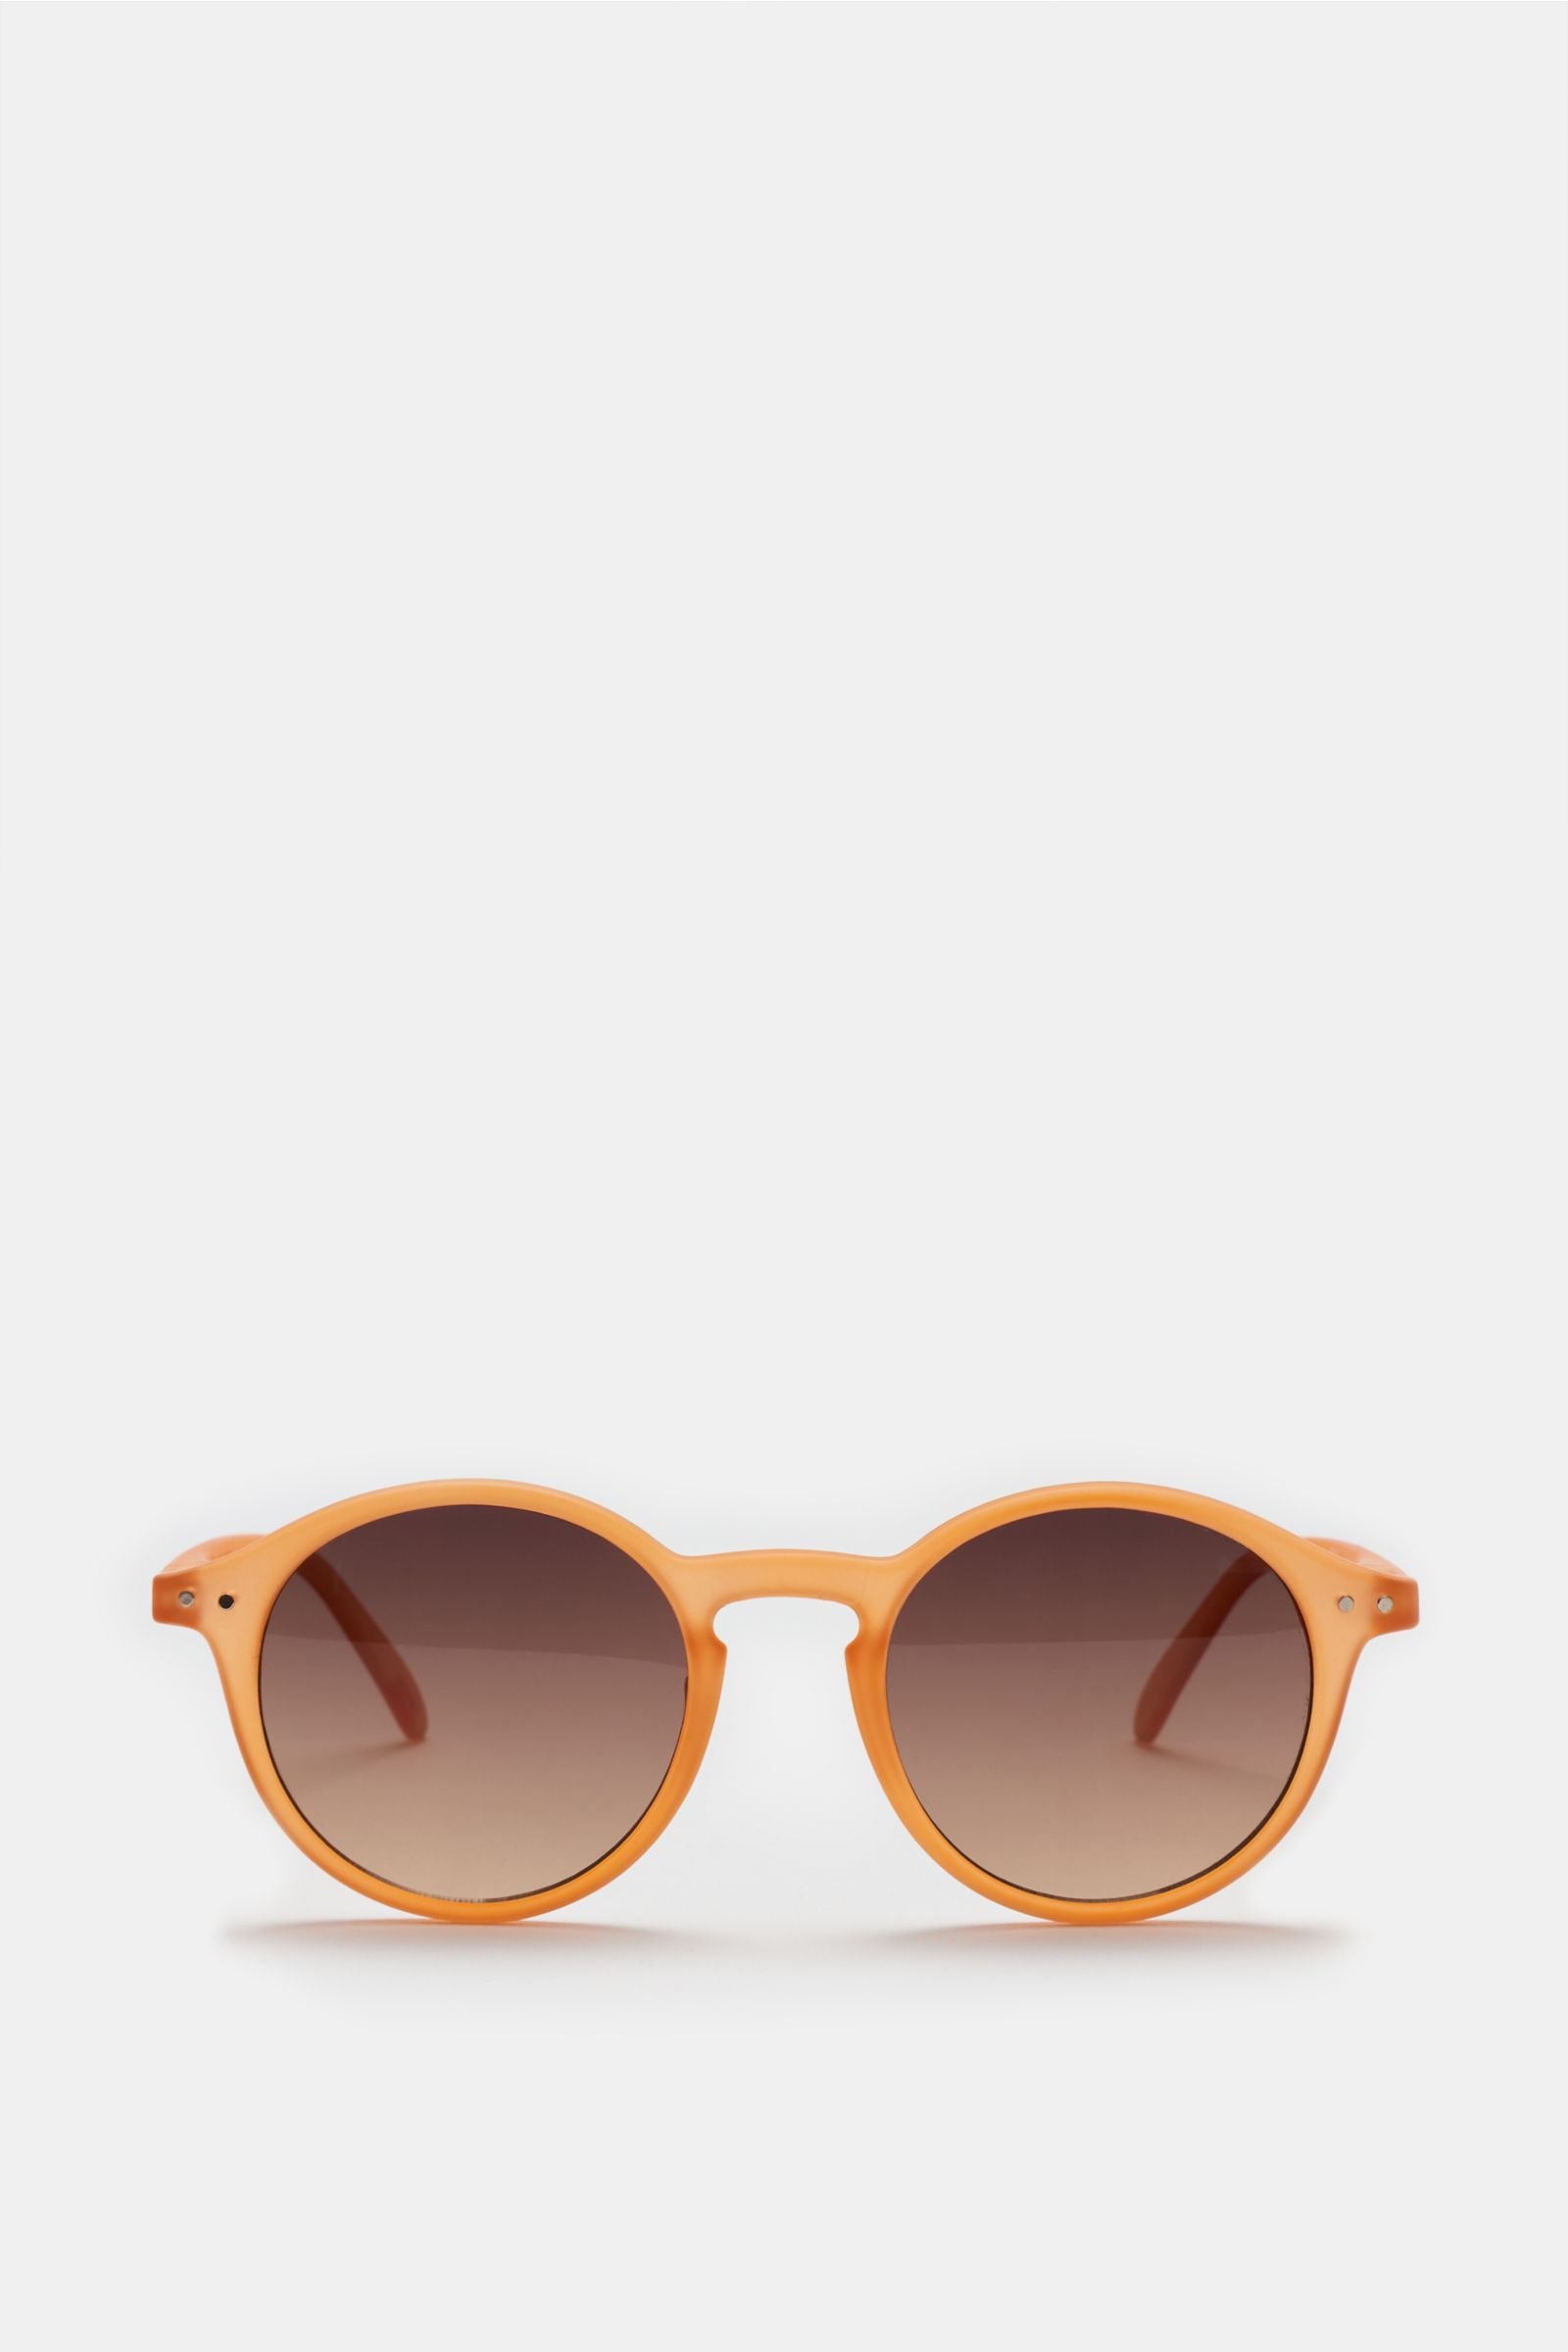 Sonnenbrille '#D Sun' orange/braun